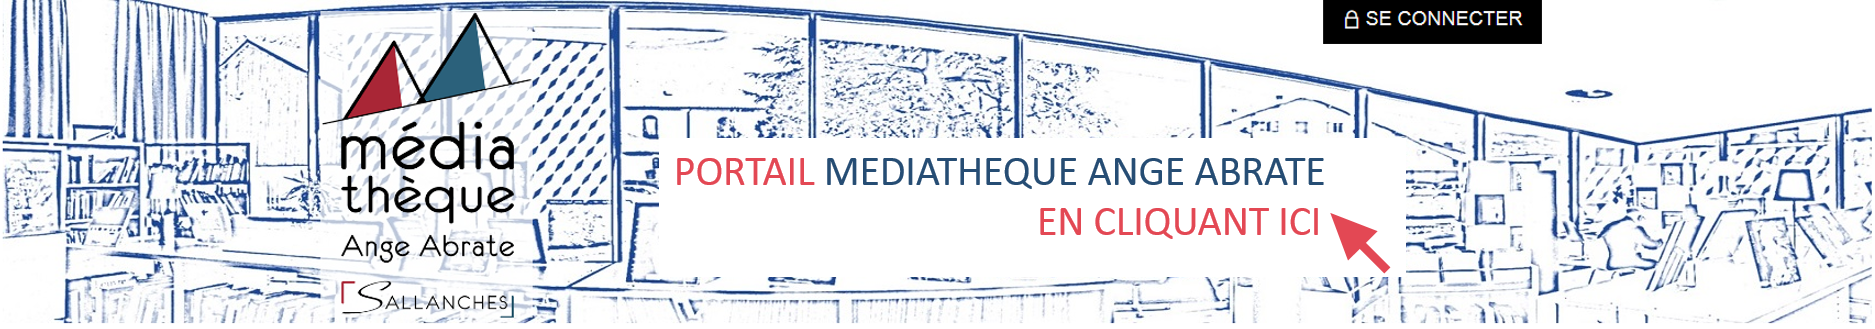 Bannière portail Médiathèque